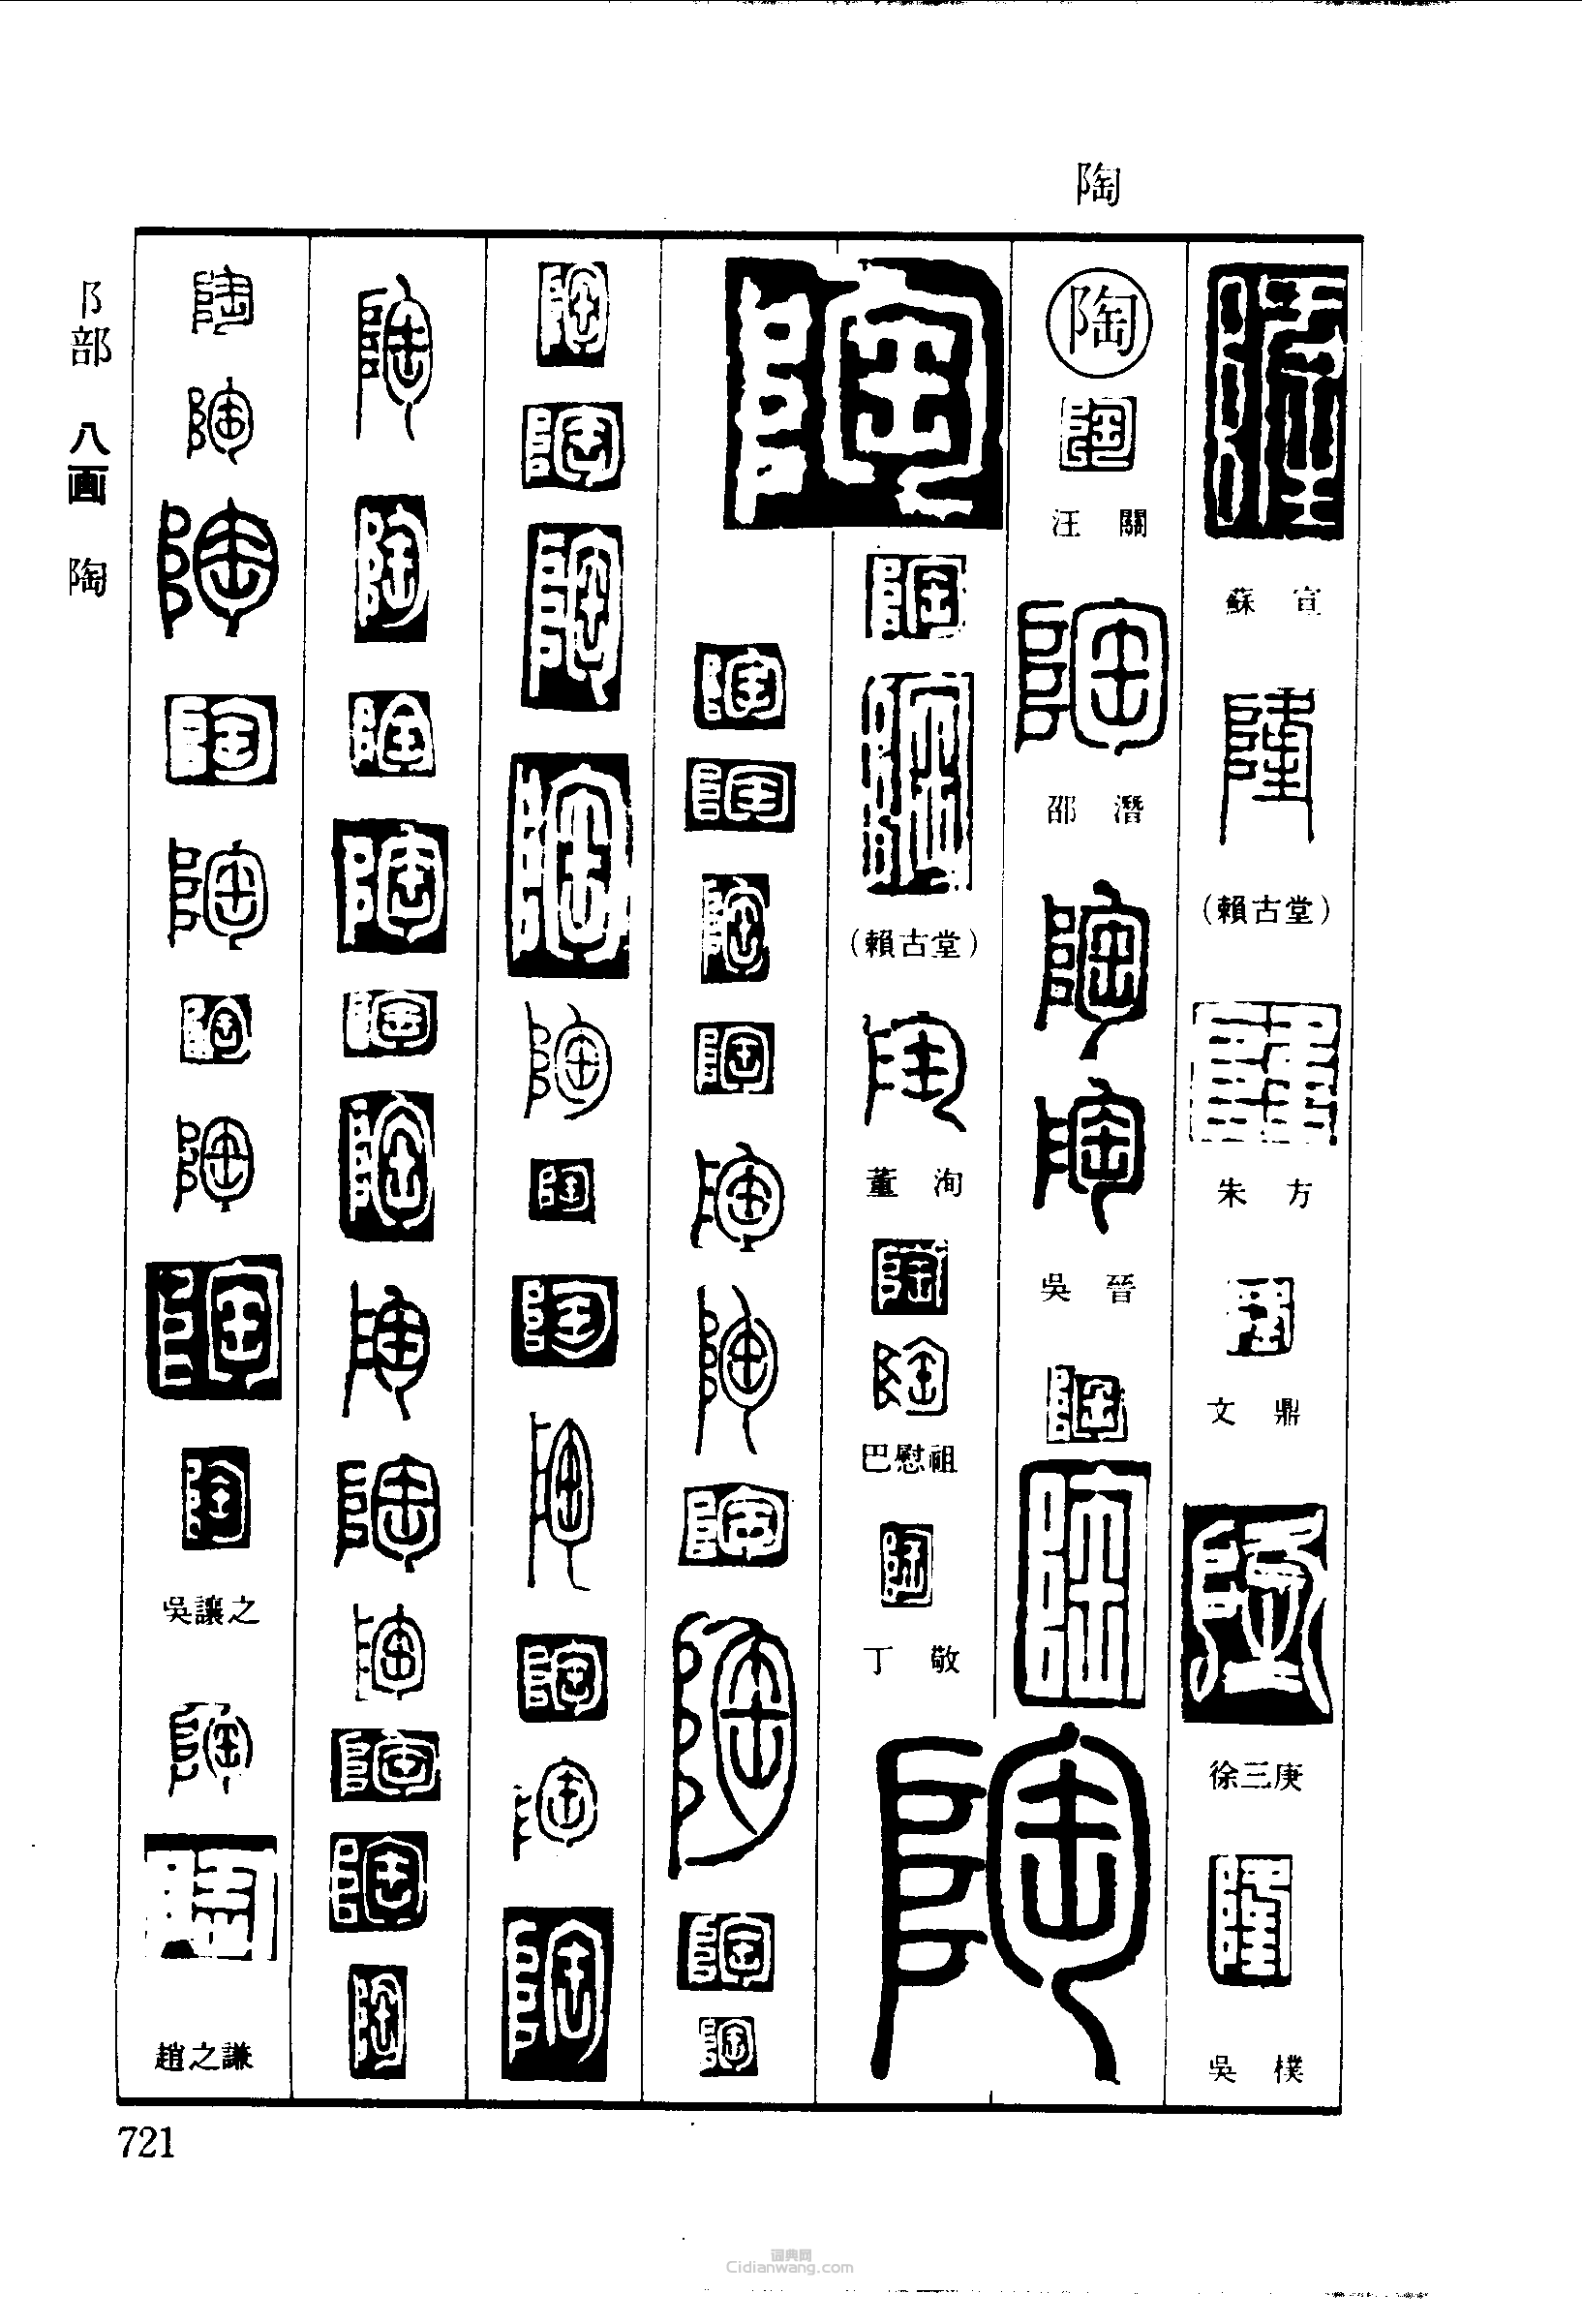 “隆陶”篆刻印章